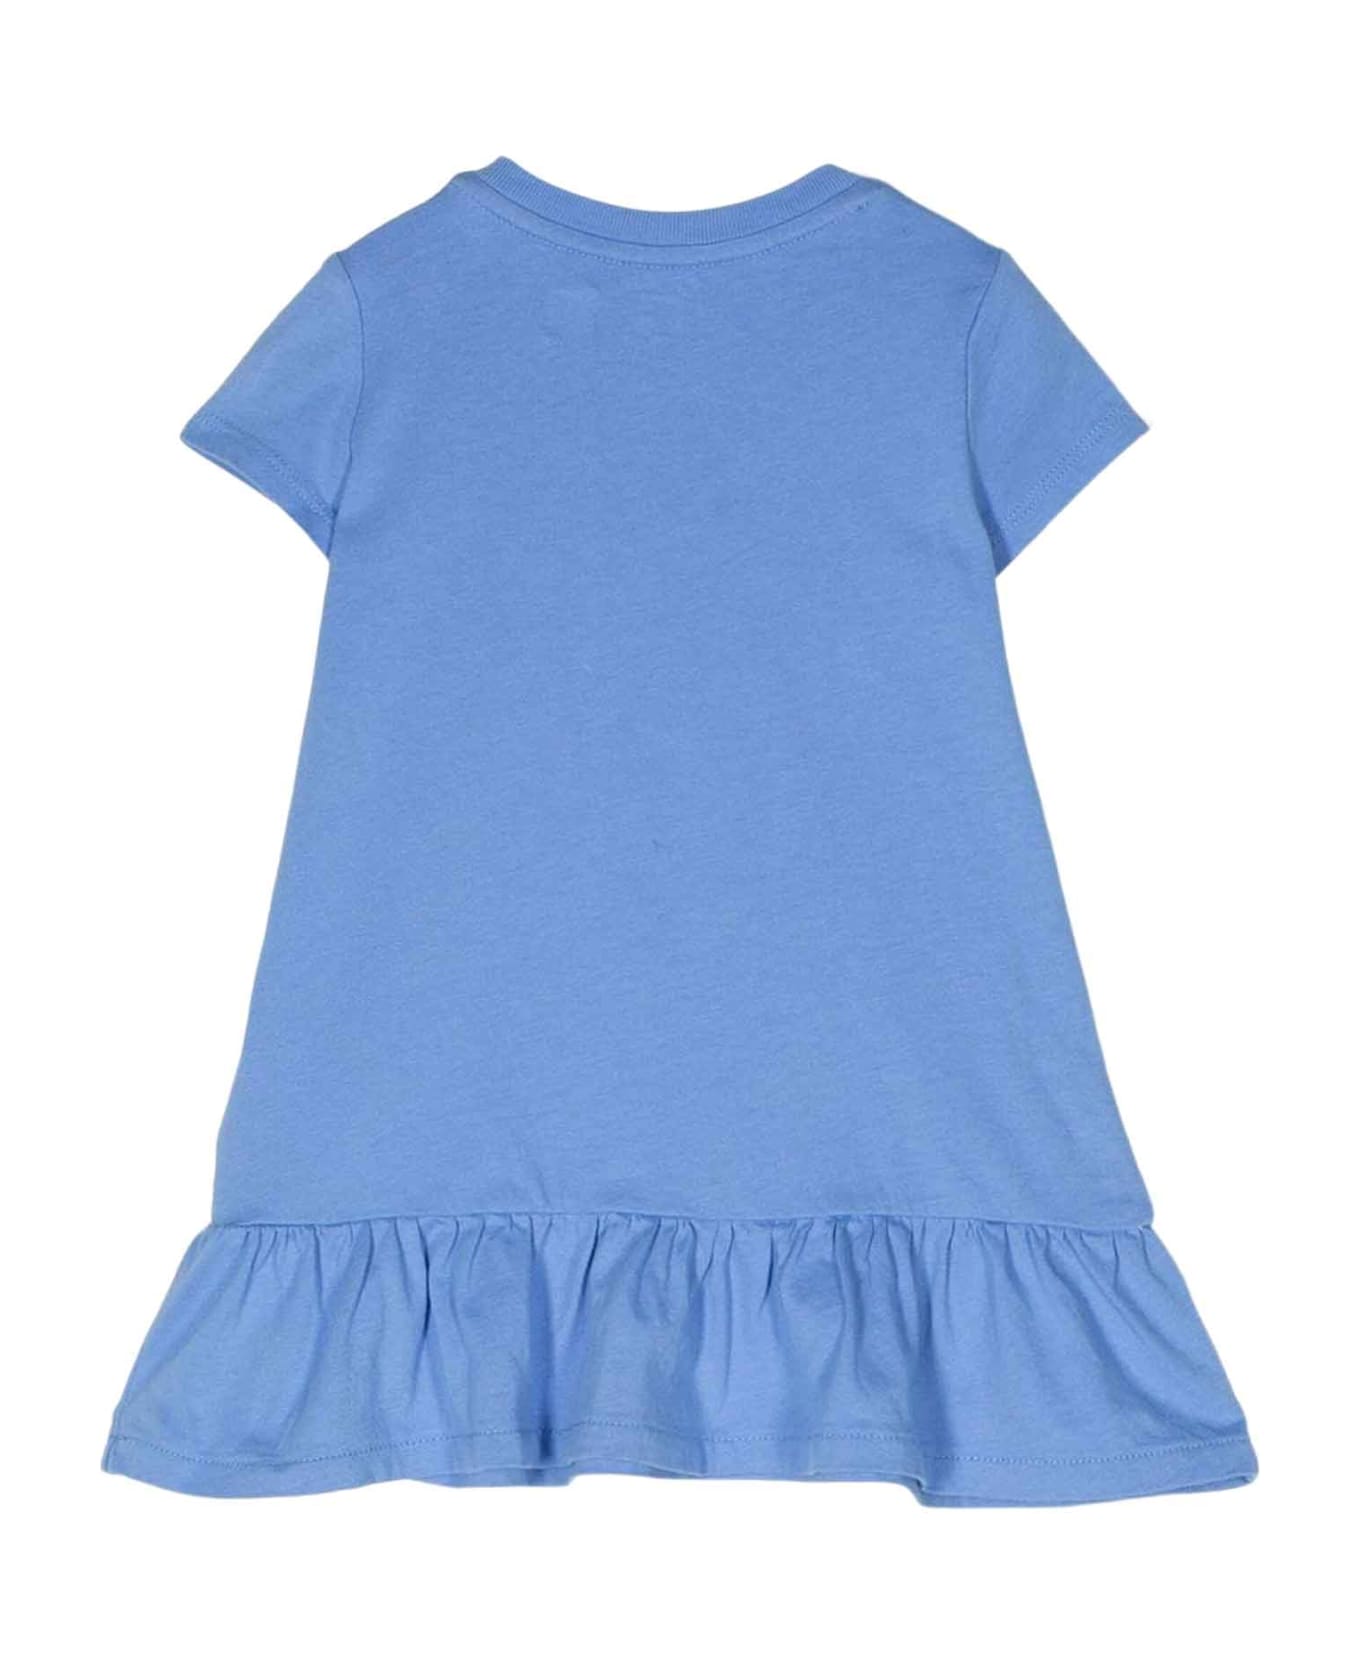 Ralph Lauren Blue Dress Baby Girl - Bright Blue